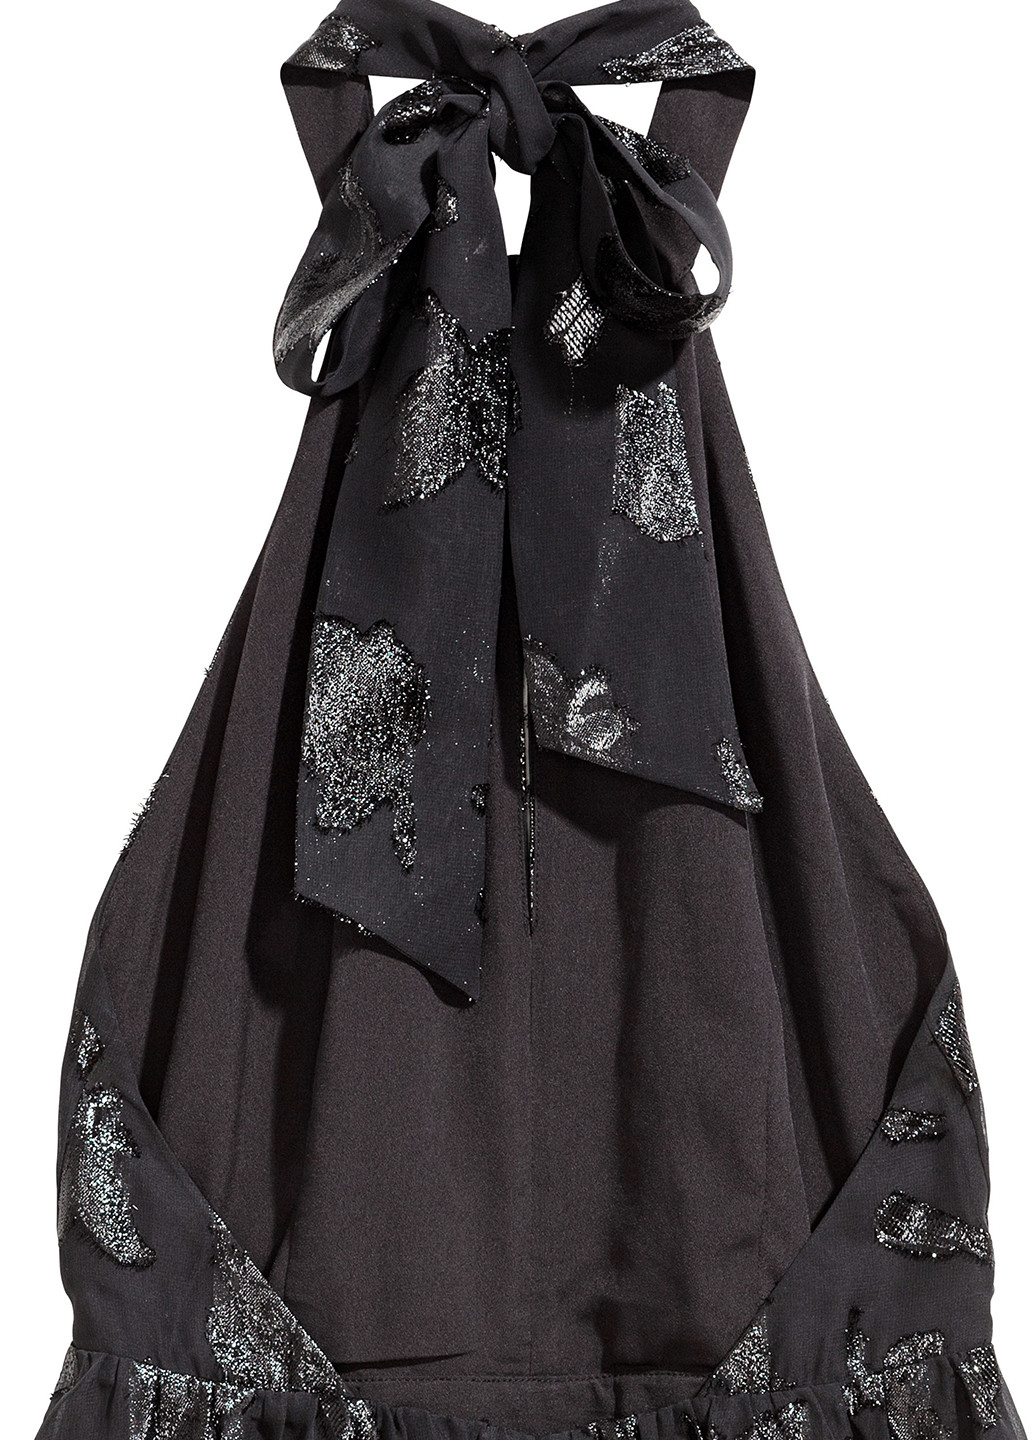 Черное кэжуал платье H&M фактурное